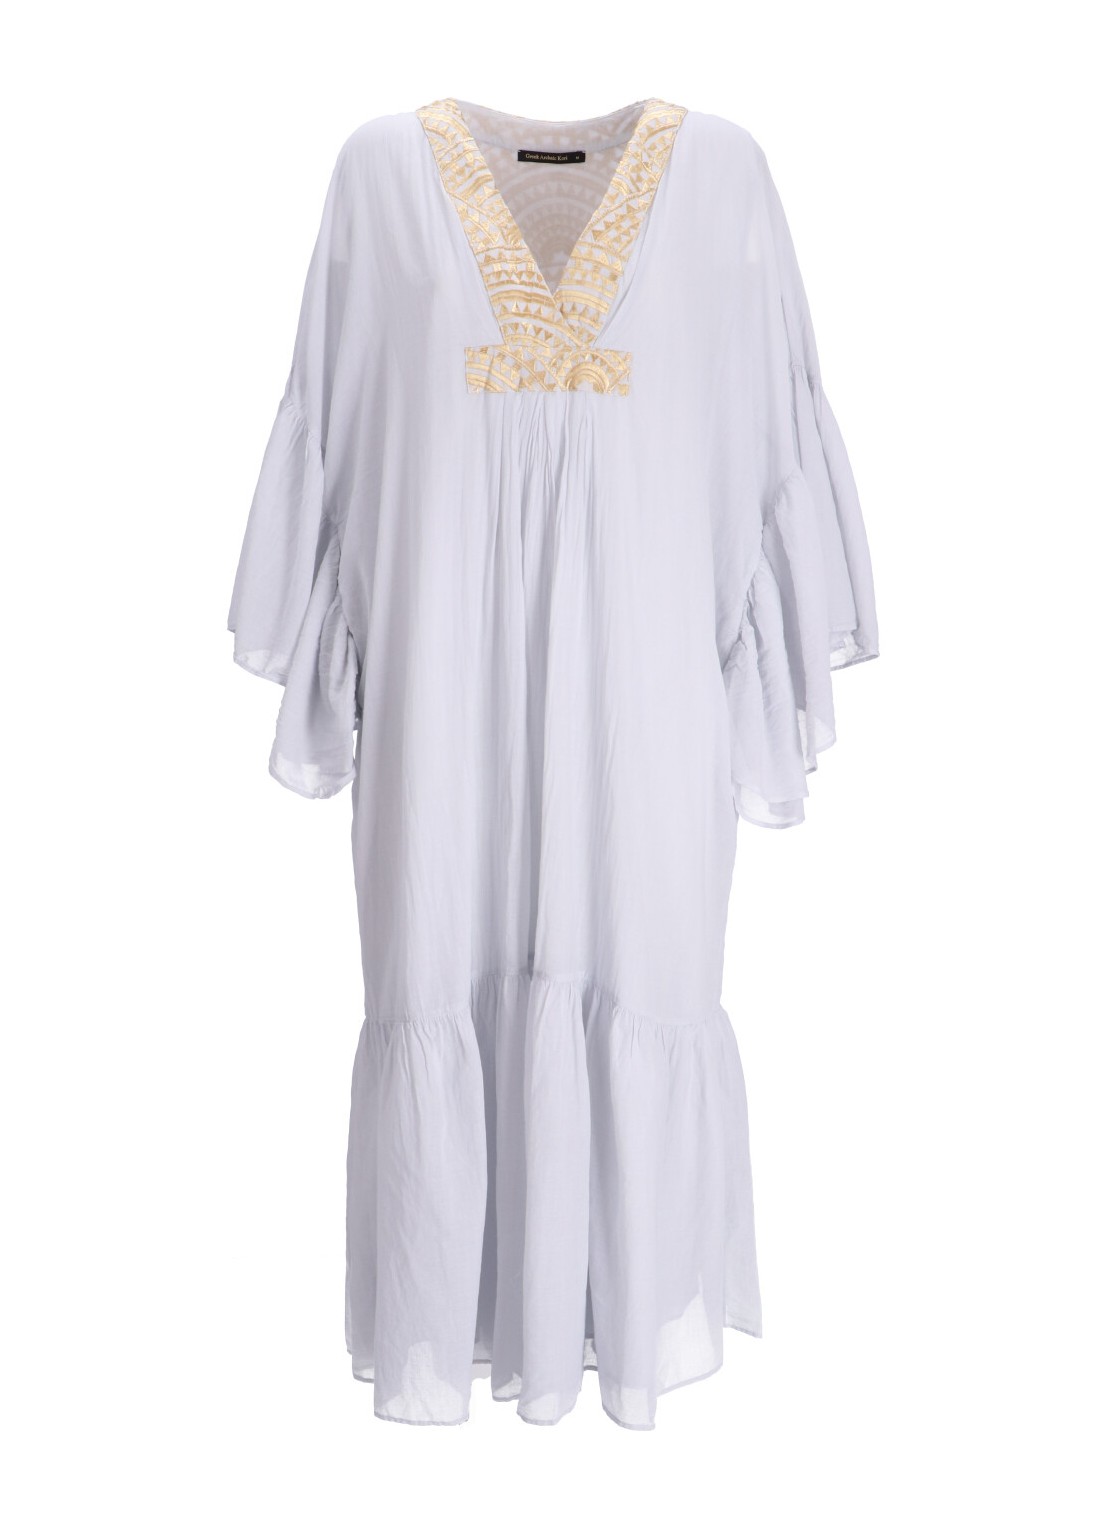 Vestido greek archaic kori dress woman dress long new all over l/s s24k330161 151 talla gris
 